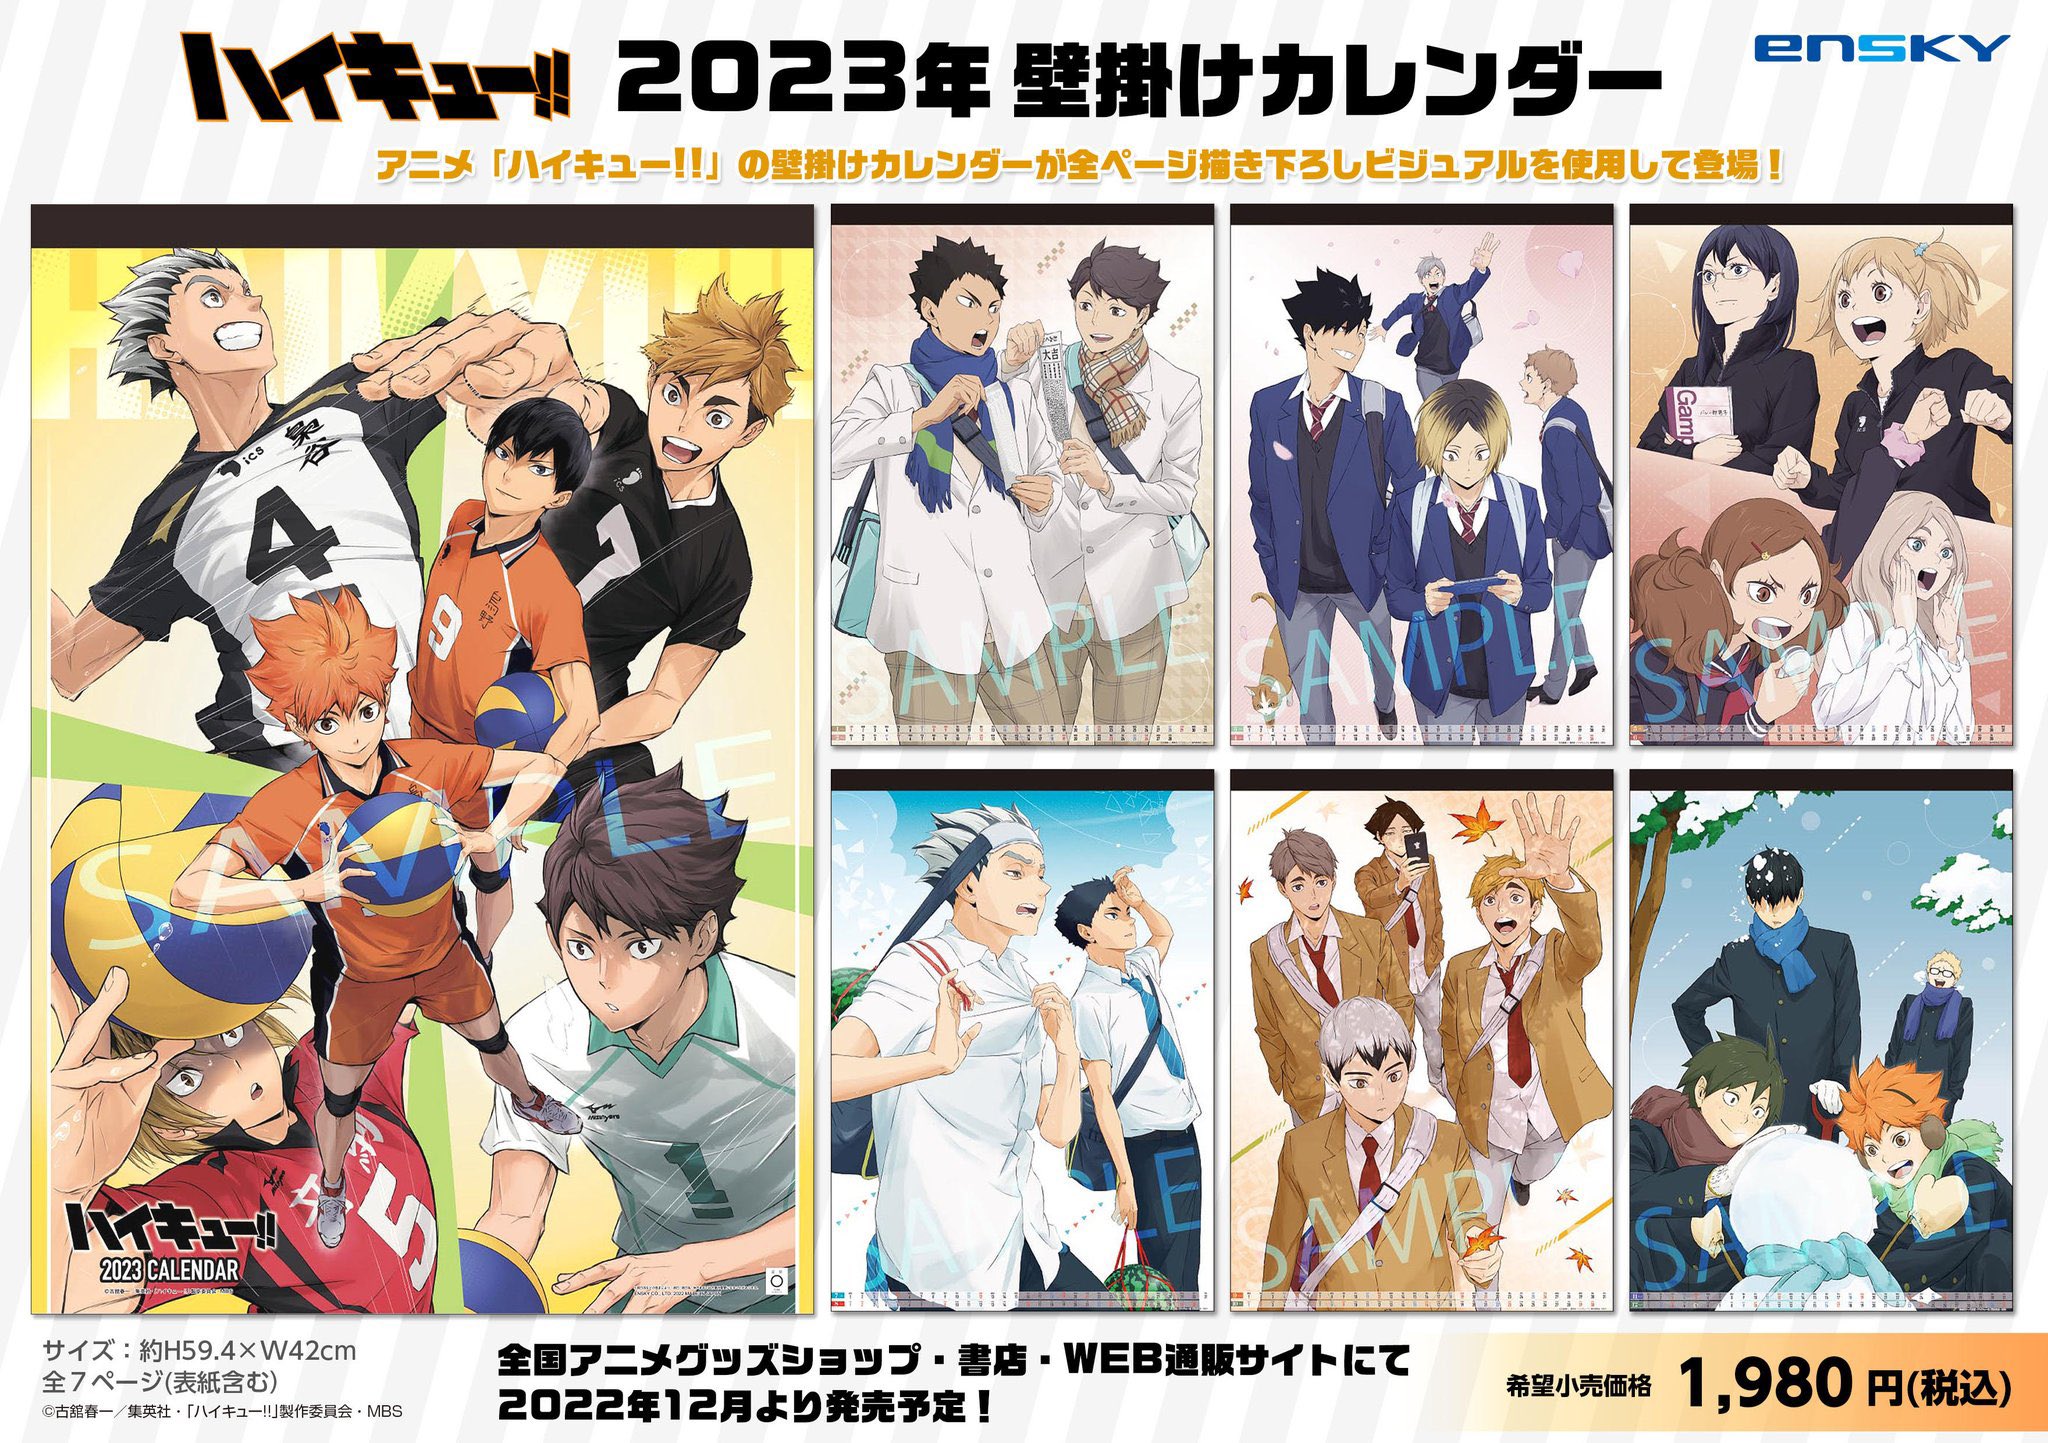 HAIKYU!! on X: Haikyu!! TO THE TOP 2022 Anime Calendar Releasing